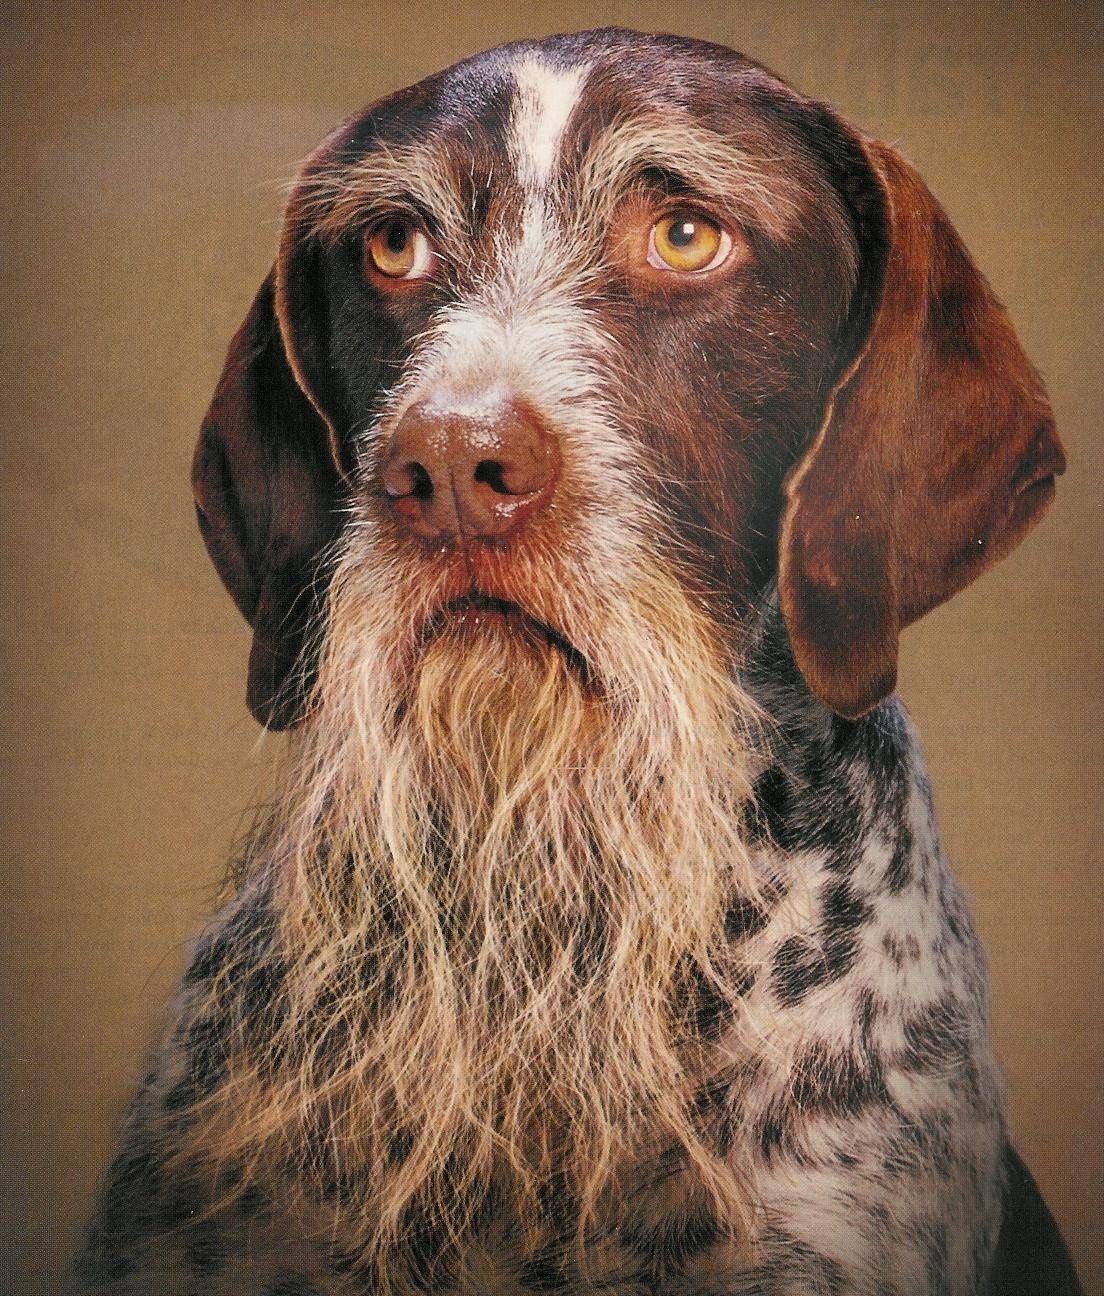 ФОТО: Собака с бородой 3